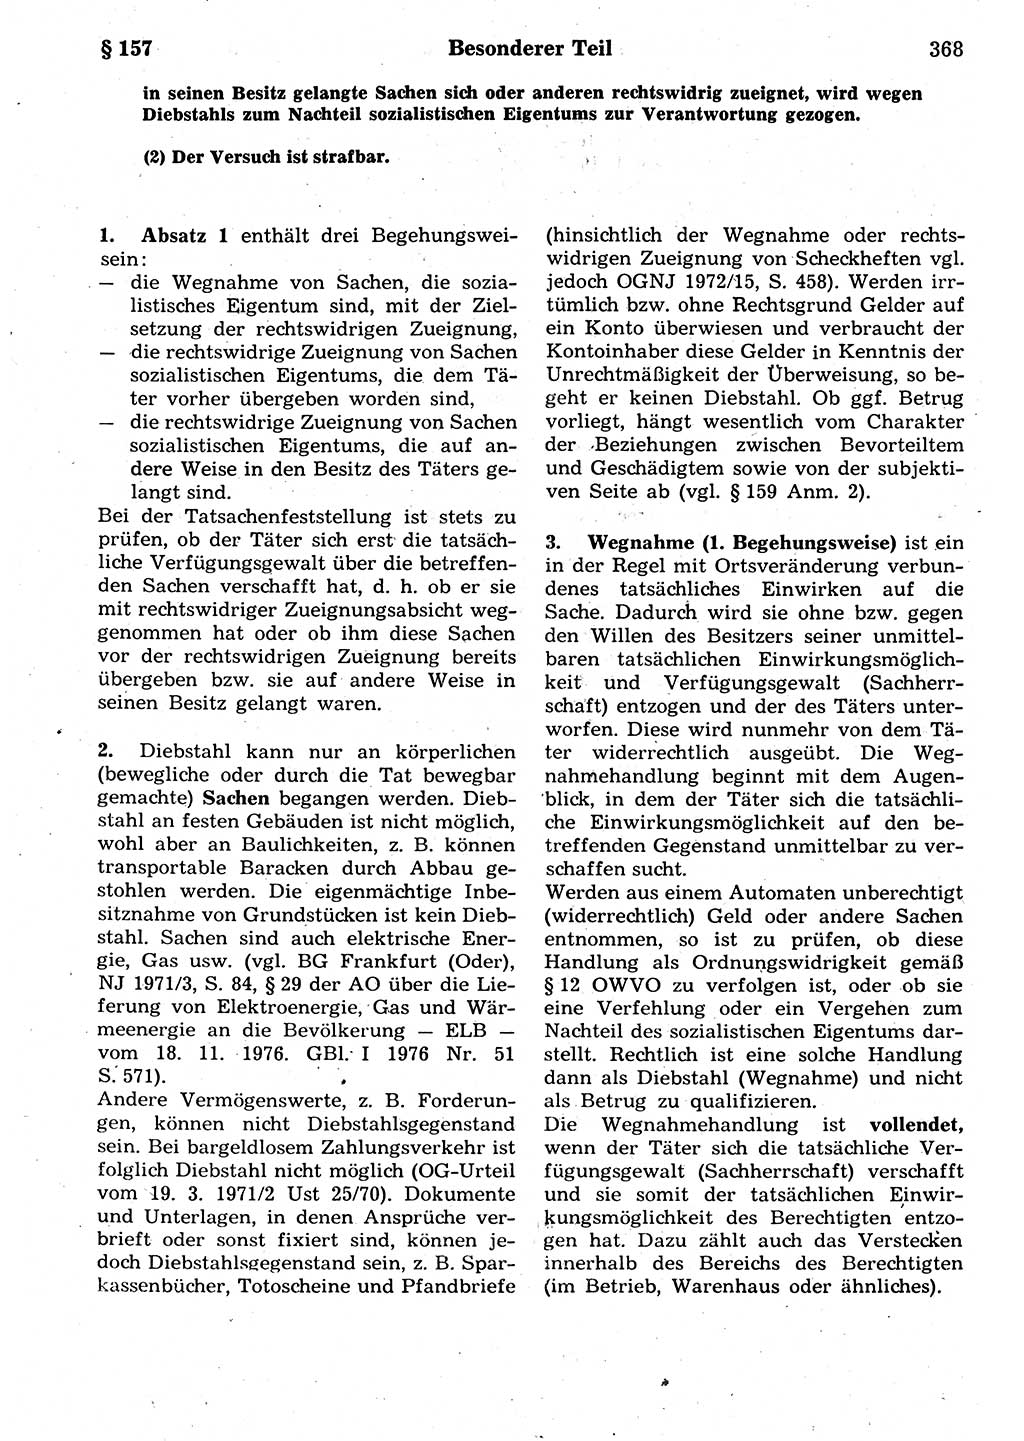 Strafrecht der Deutschen Demokratischen Republik (DDR), Kommentar zum Strafgesetzbuch (StGB) 1987, Seite 368 (Strafr. DDR Komm. StGB 1987, S. 368)